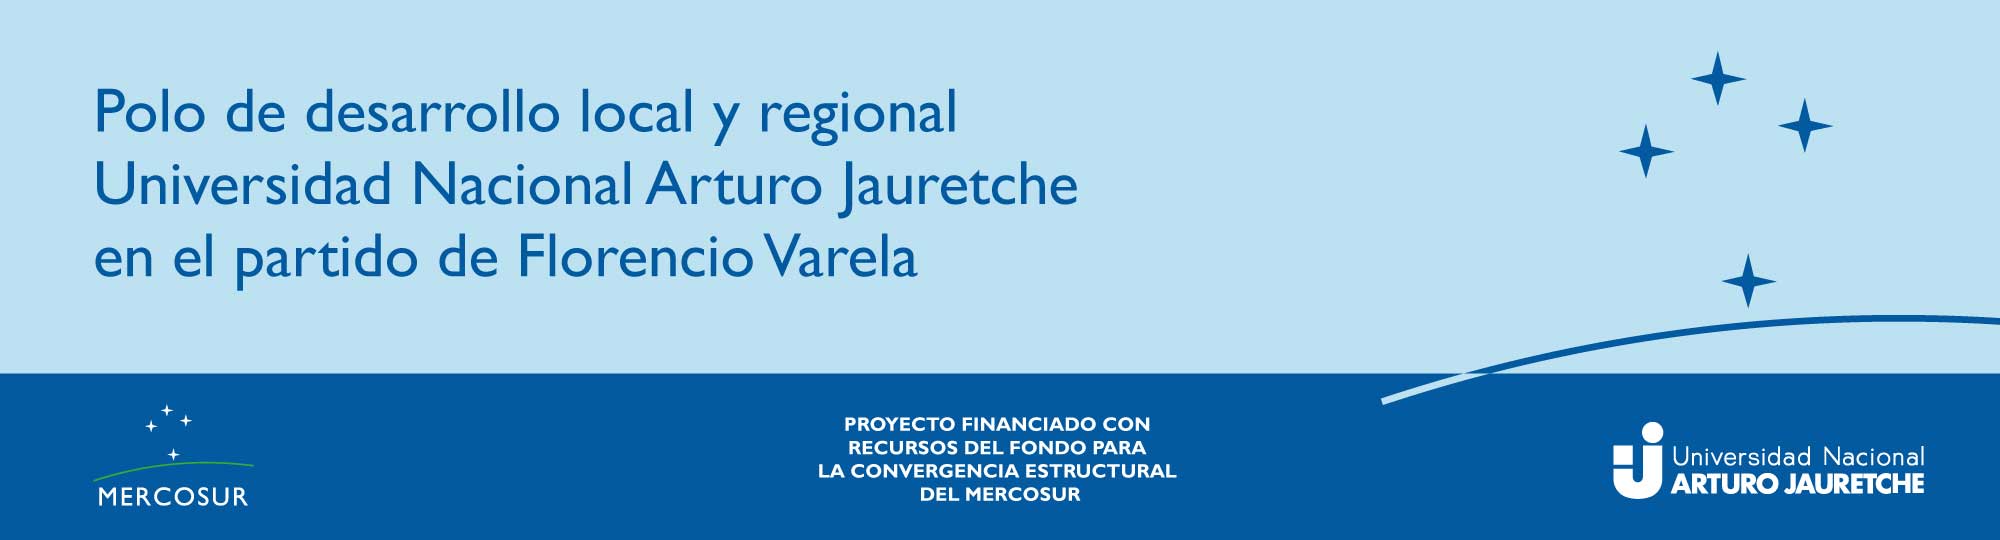 Polo de desarrollo local y regional Universidad Nacional Arturo Jauretche en el partido de Florencio Varela